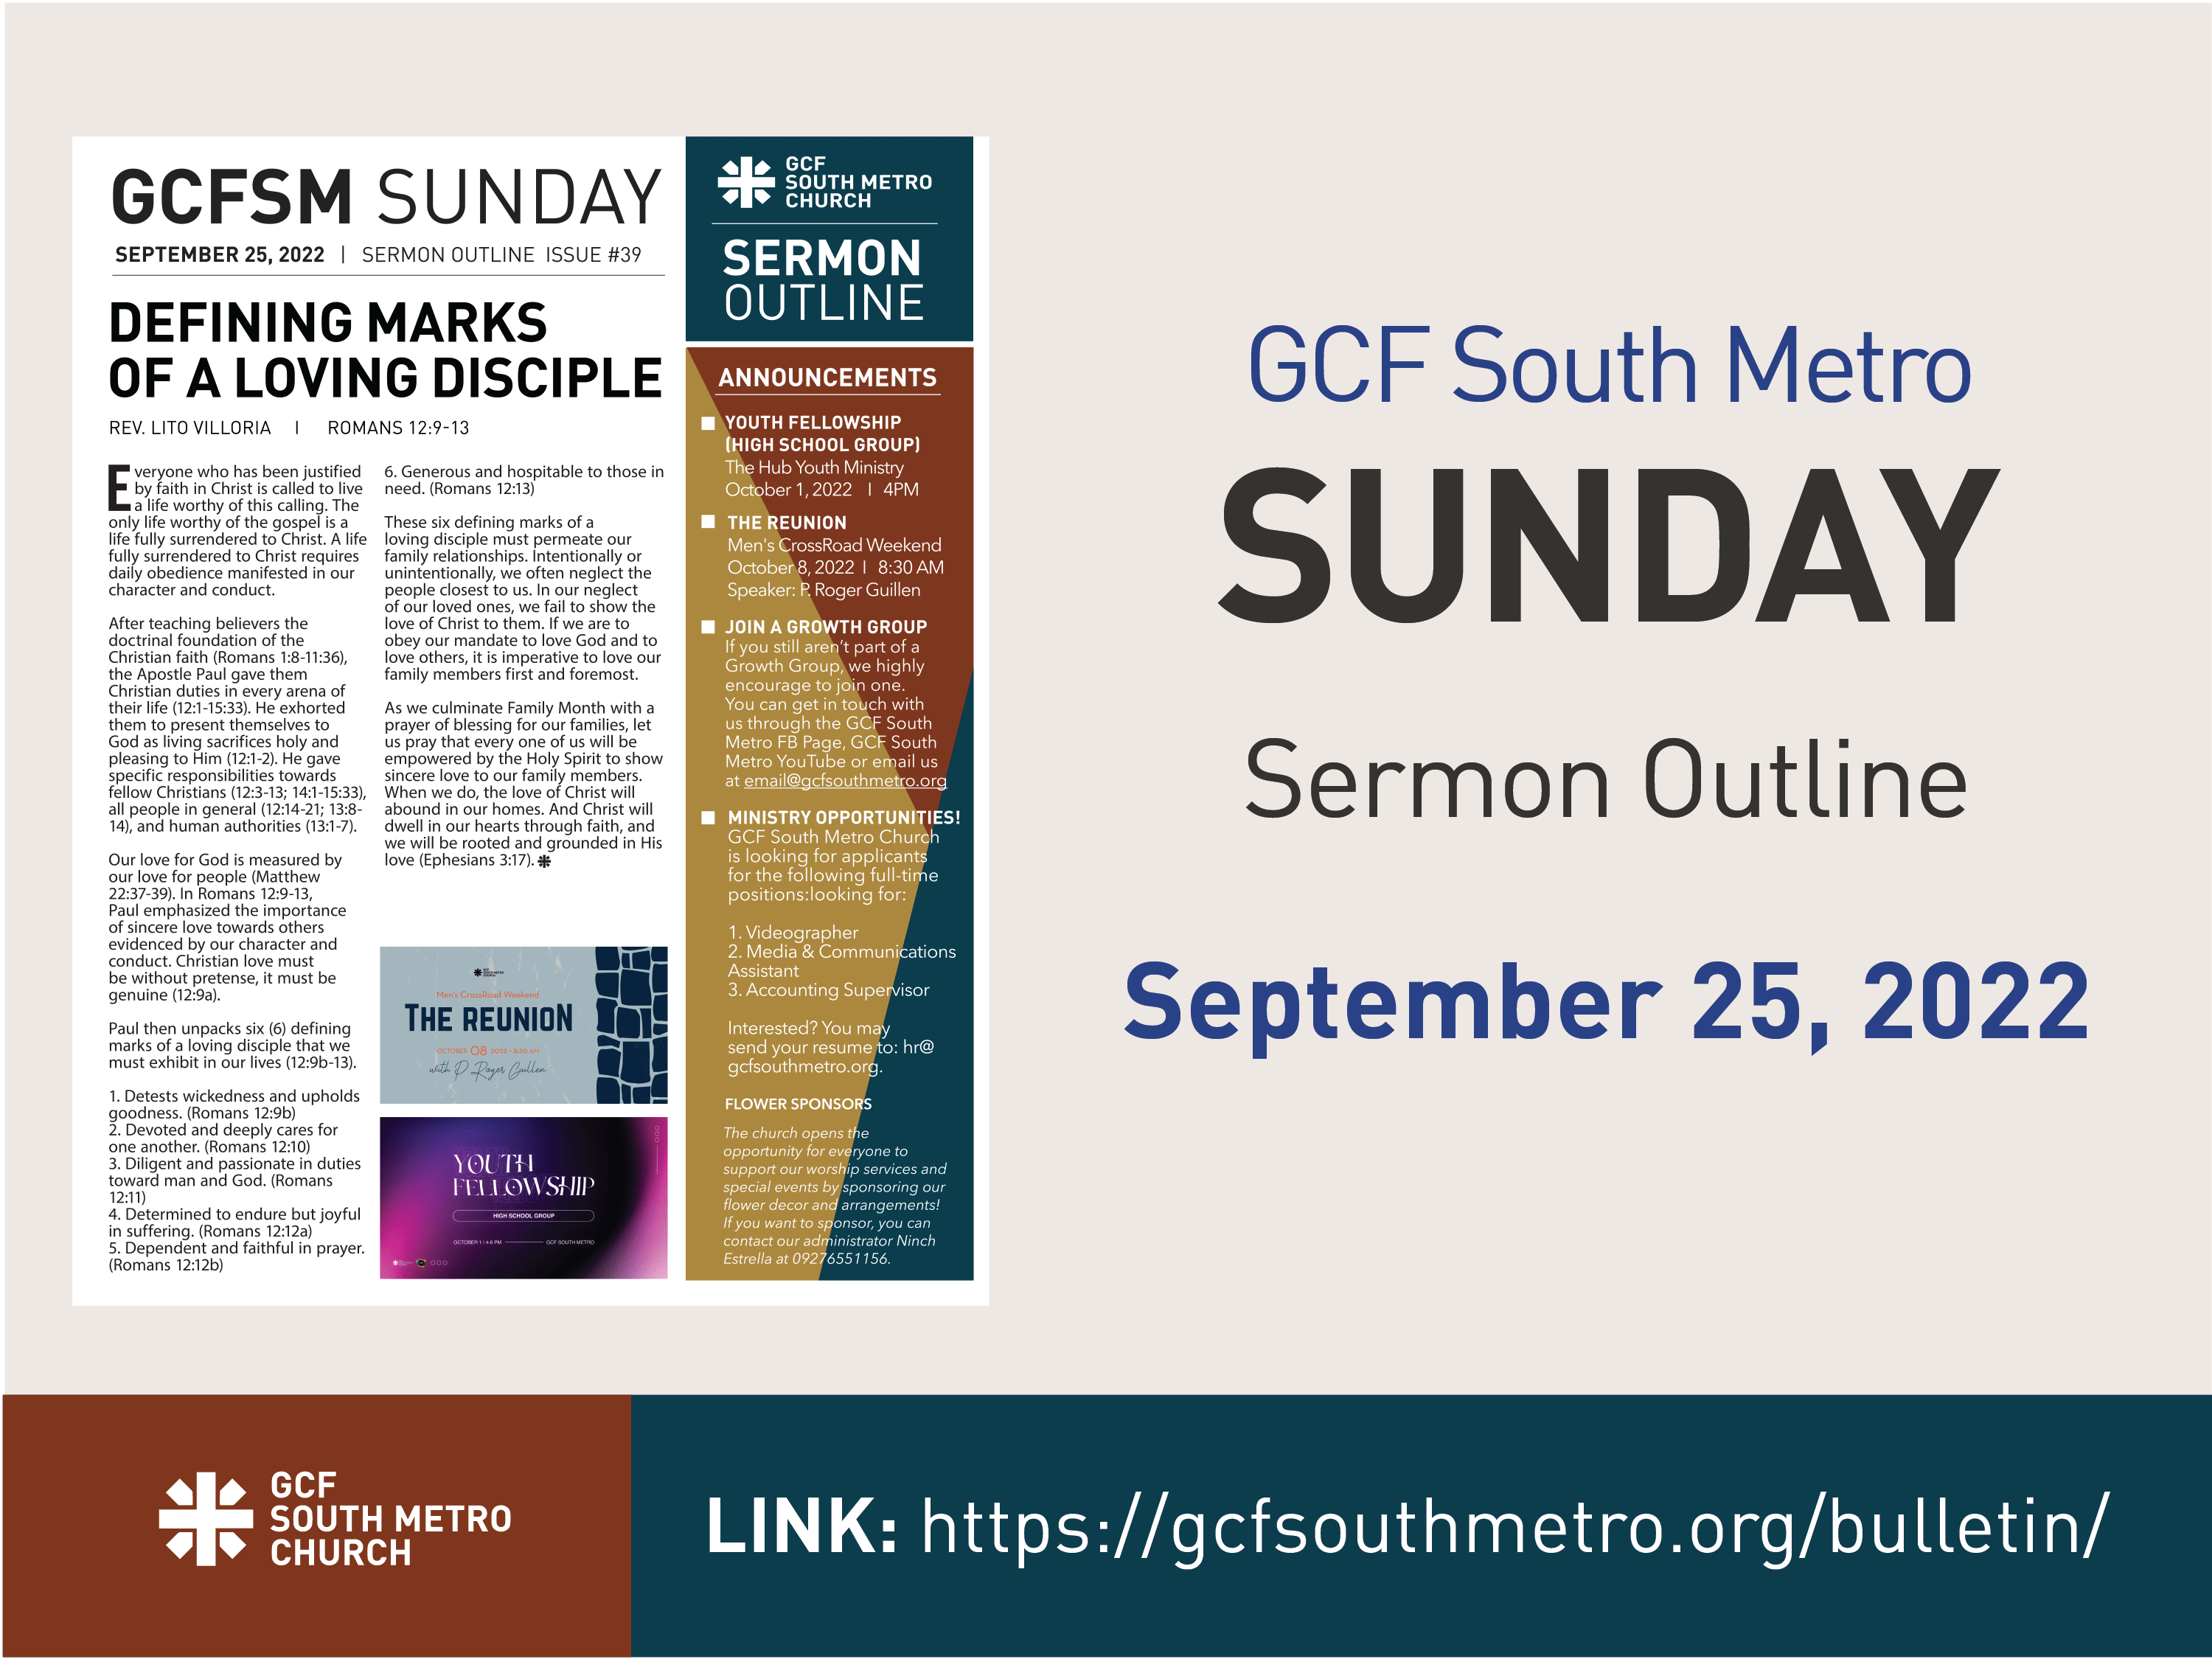 Sunday Bulletin – Sermon Outline, September 25, 2022